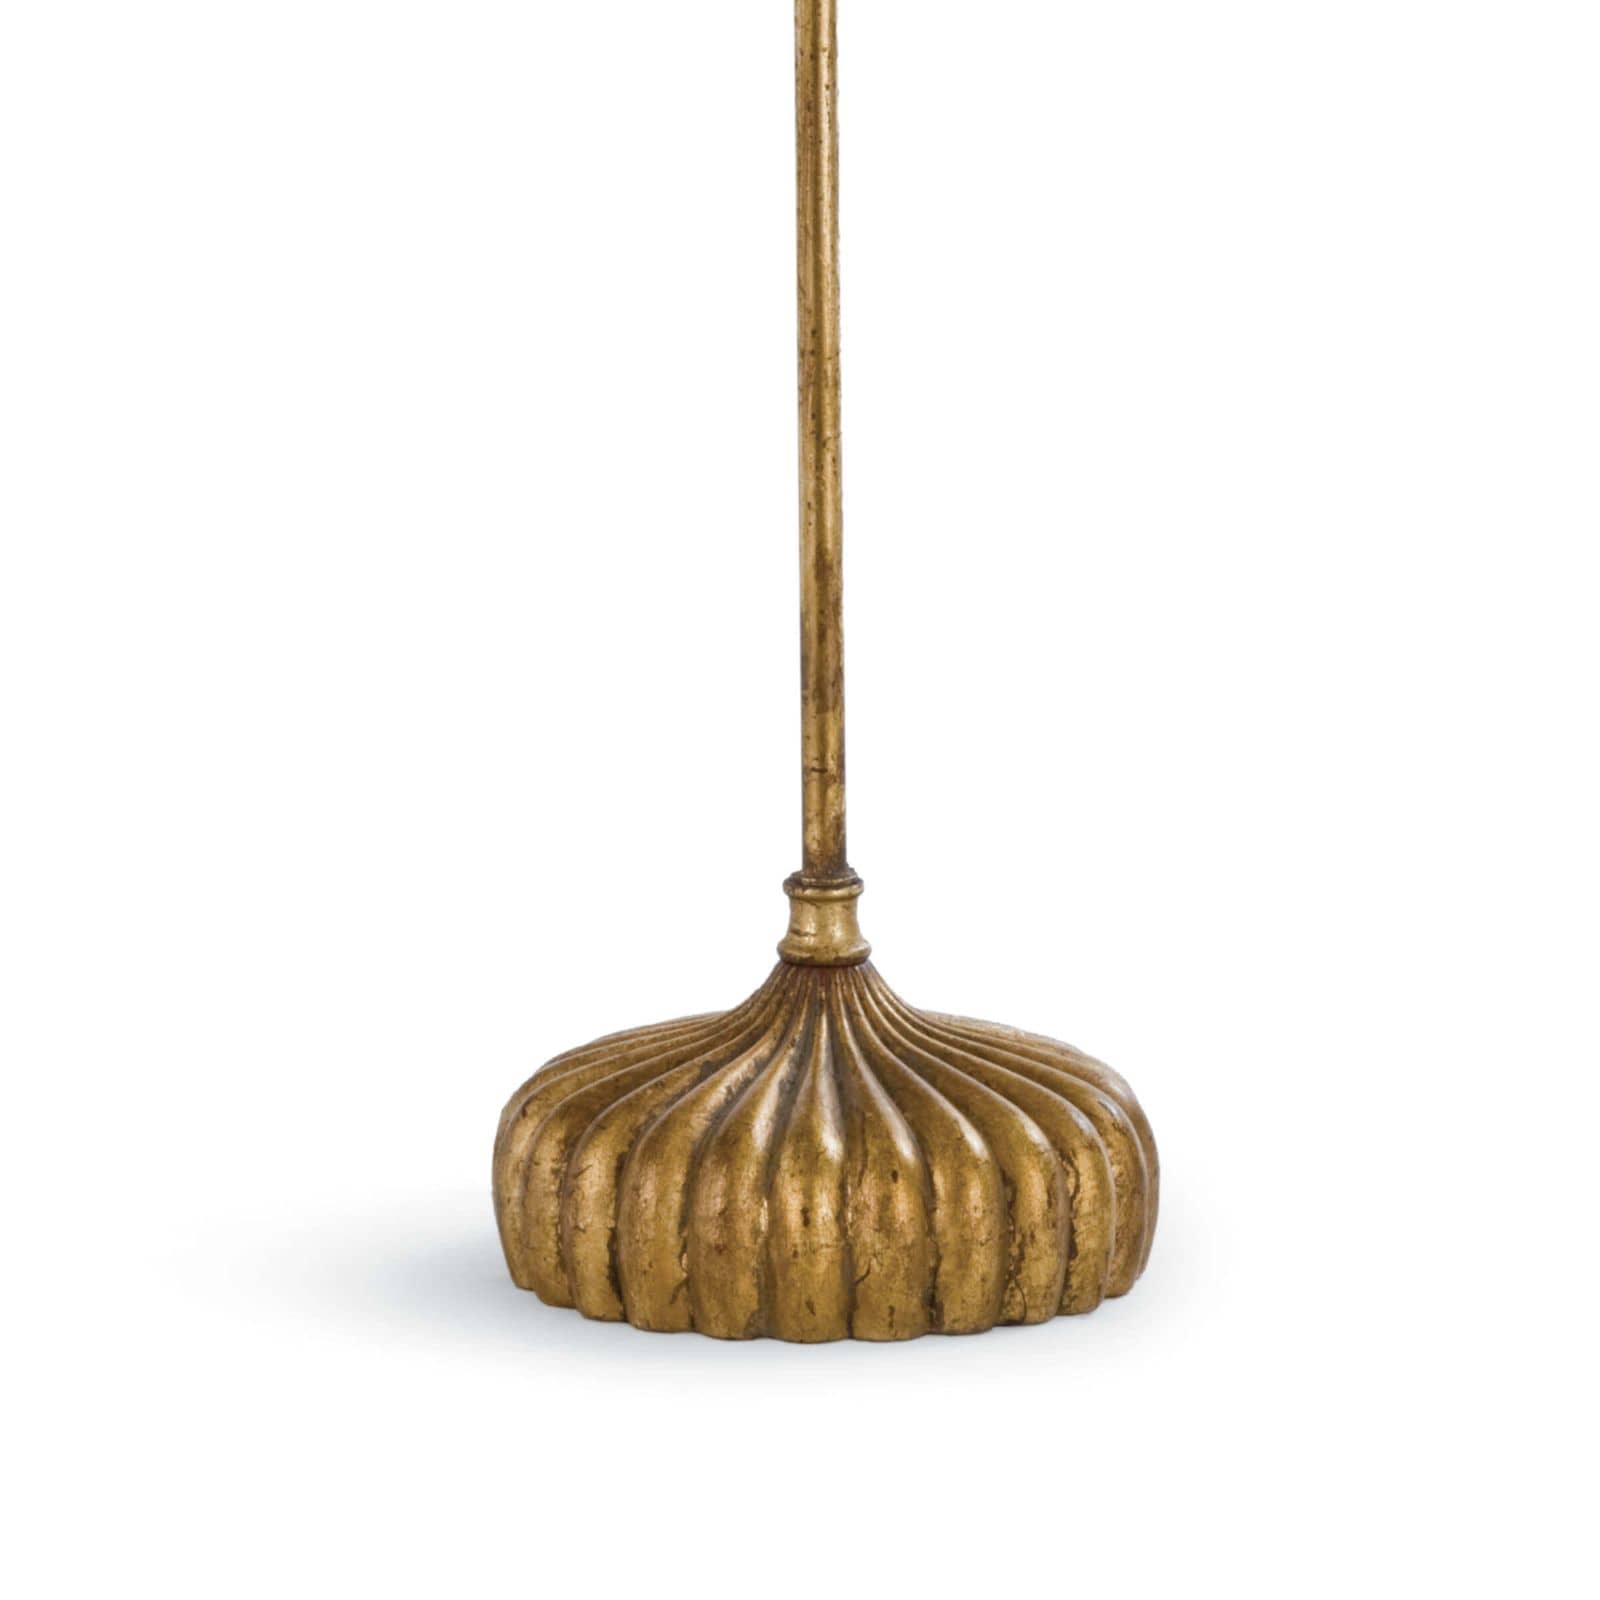 Clove Stem Buffet Table Lamp - Natural Linen Shade - - Decor - Tipplergoods